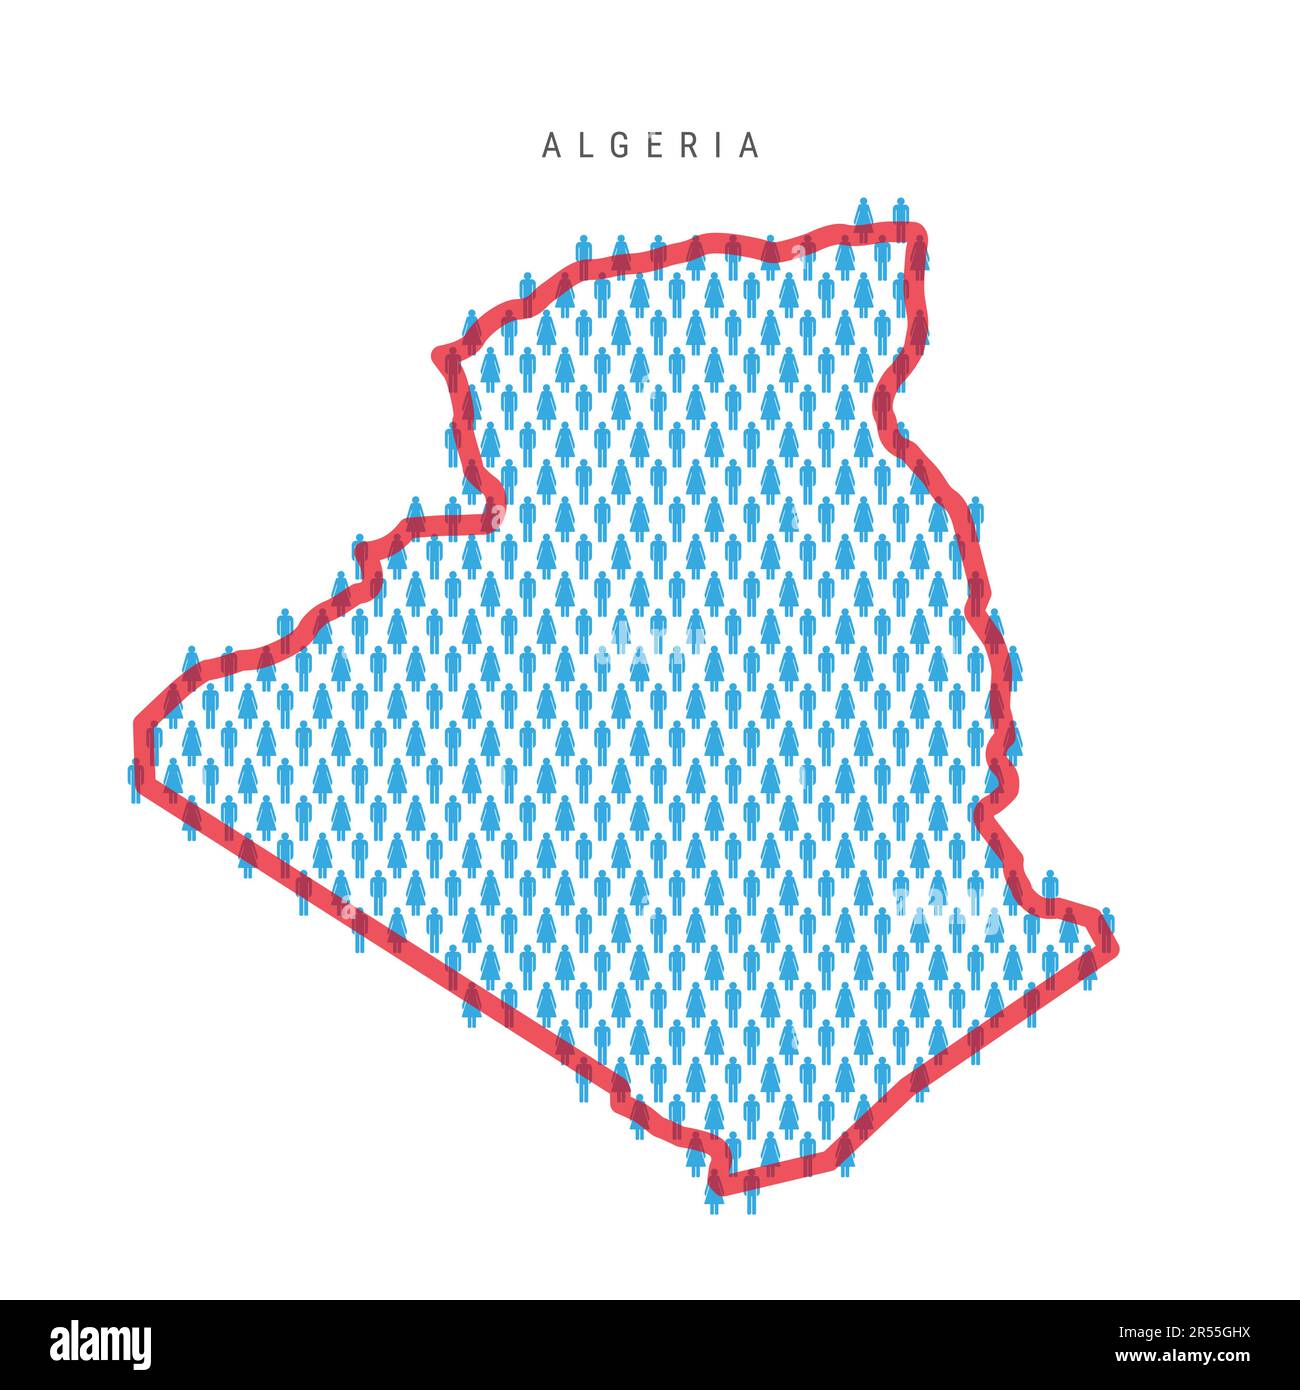 Carte de la population de l'Algérie. Chiffres en bâton carte du peuple algérien avec rouge vif translucide frontière de pays. Modèle d'icônes hommes et femmes. Vecteur isolé il Illustration de Vecteur